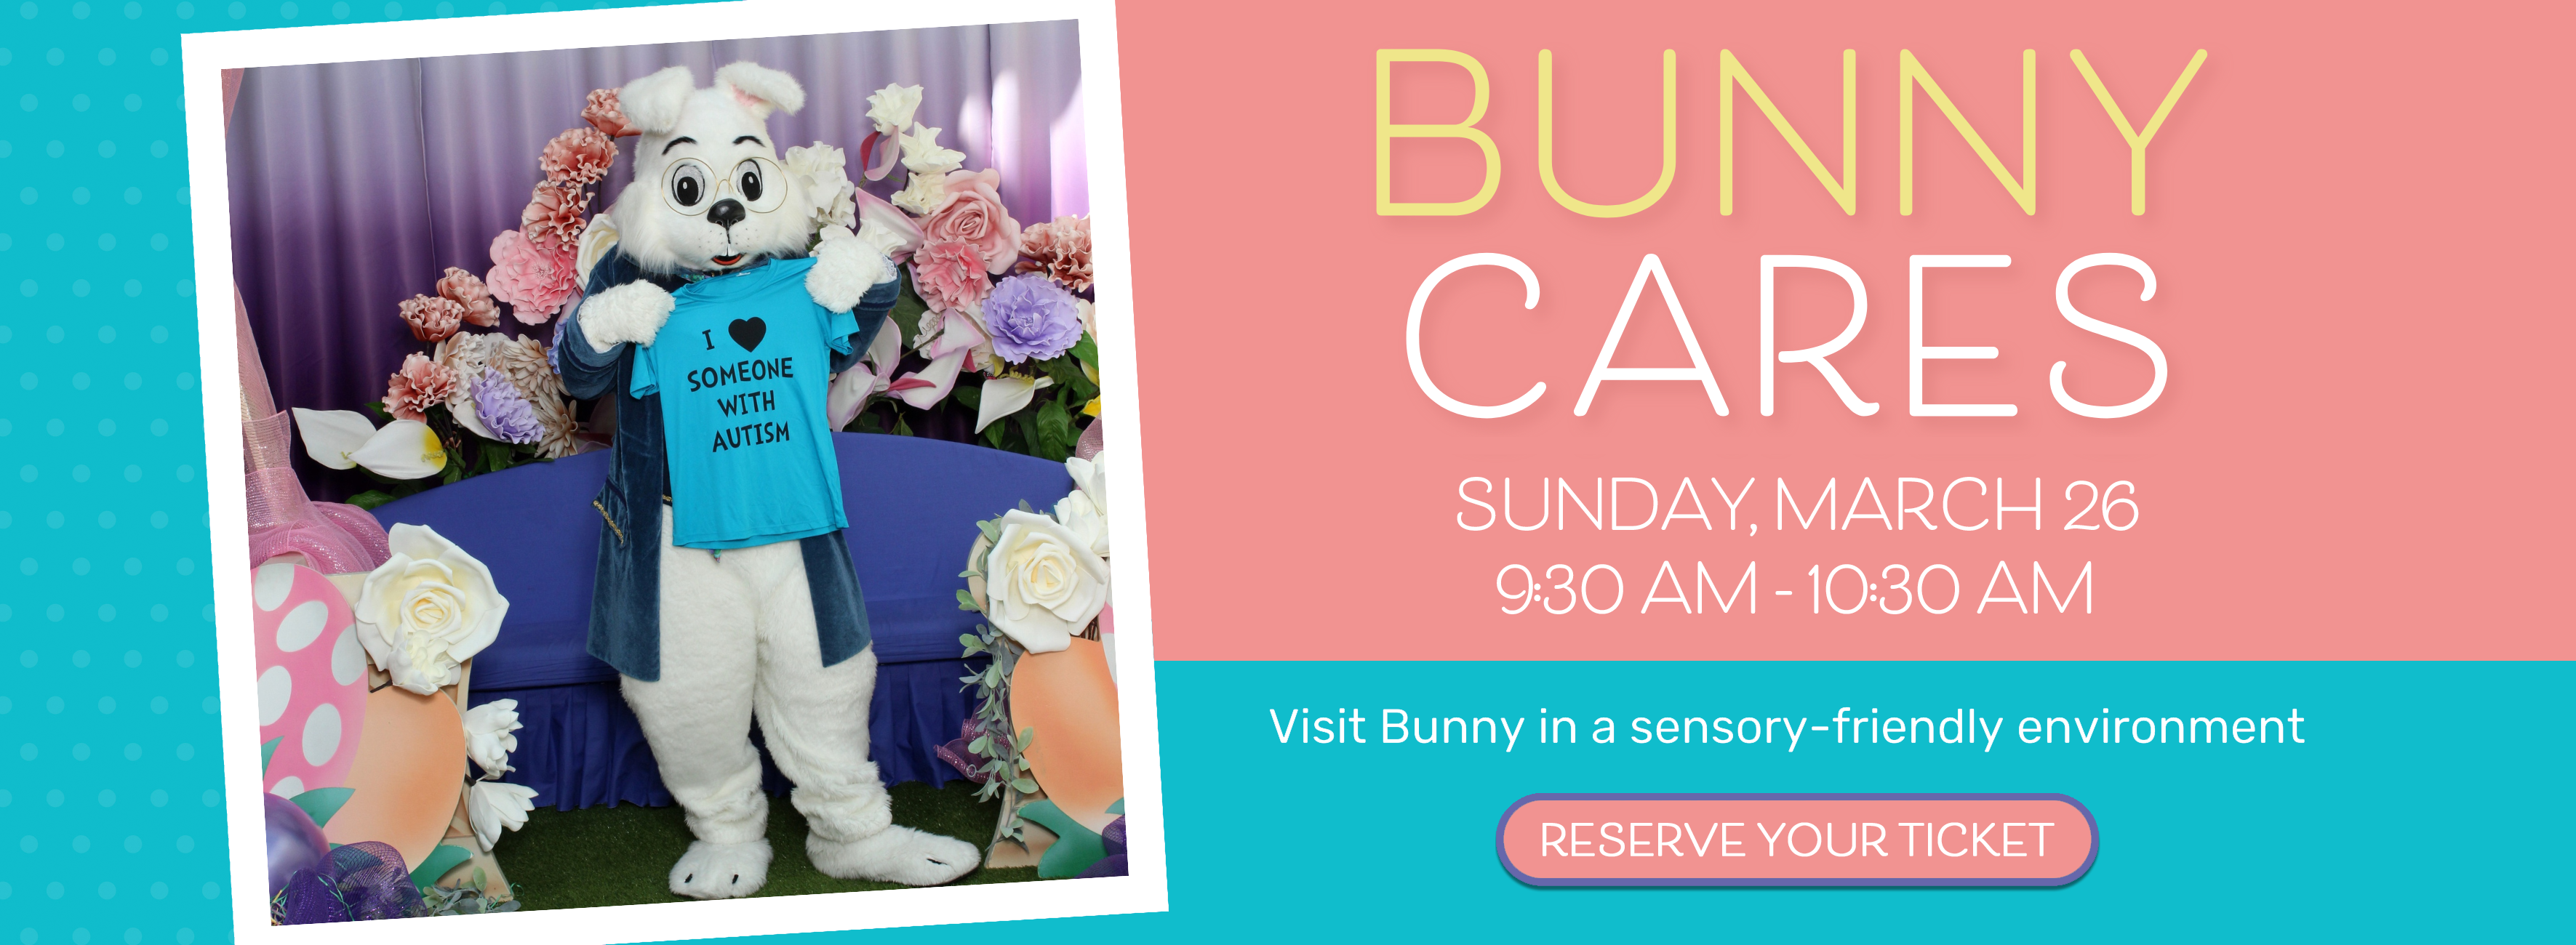 Bunny Cares Event